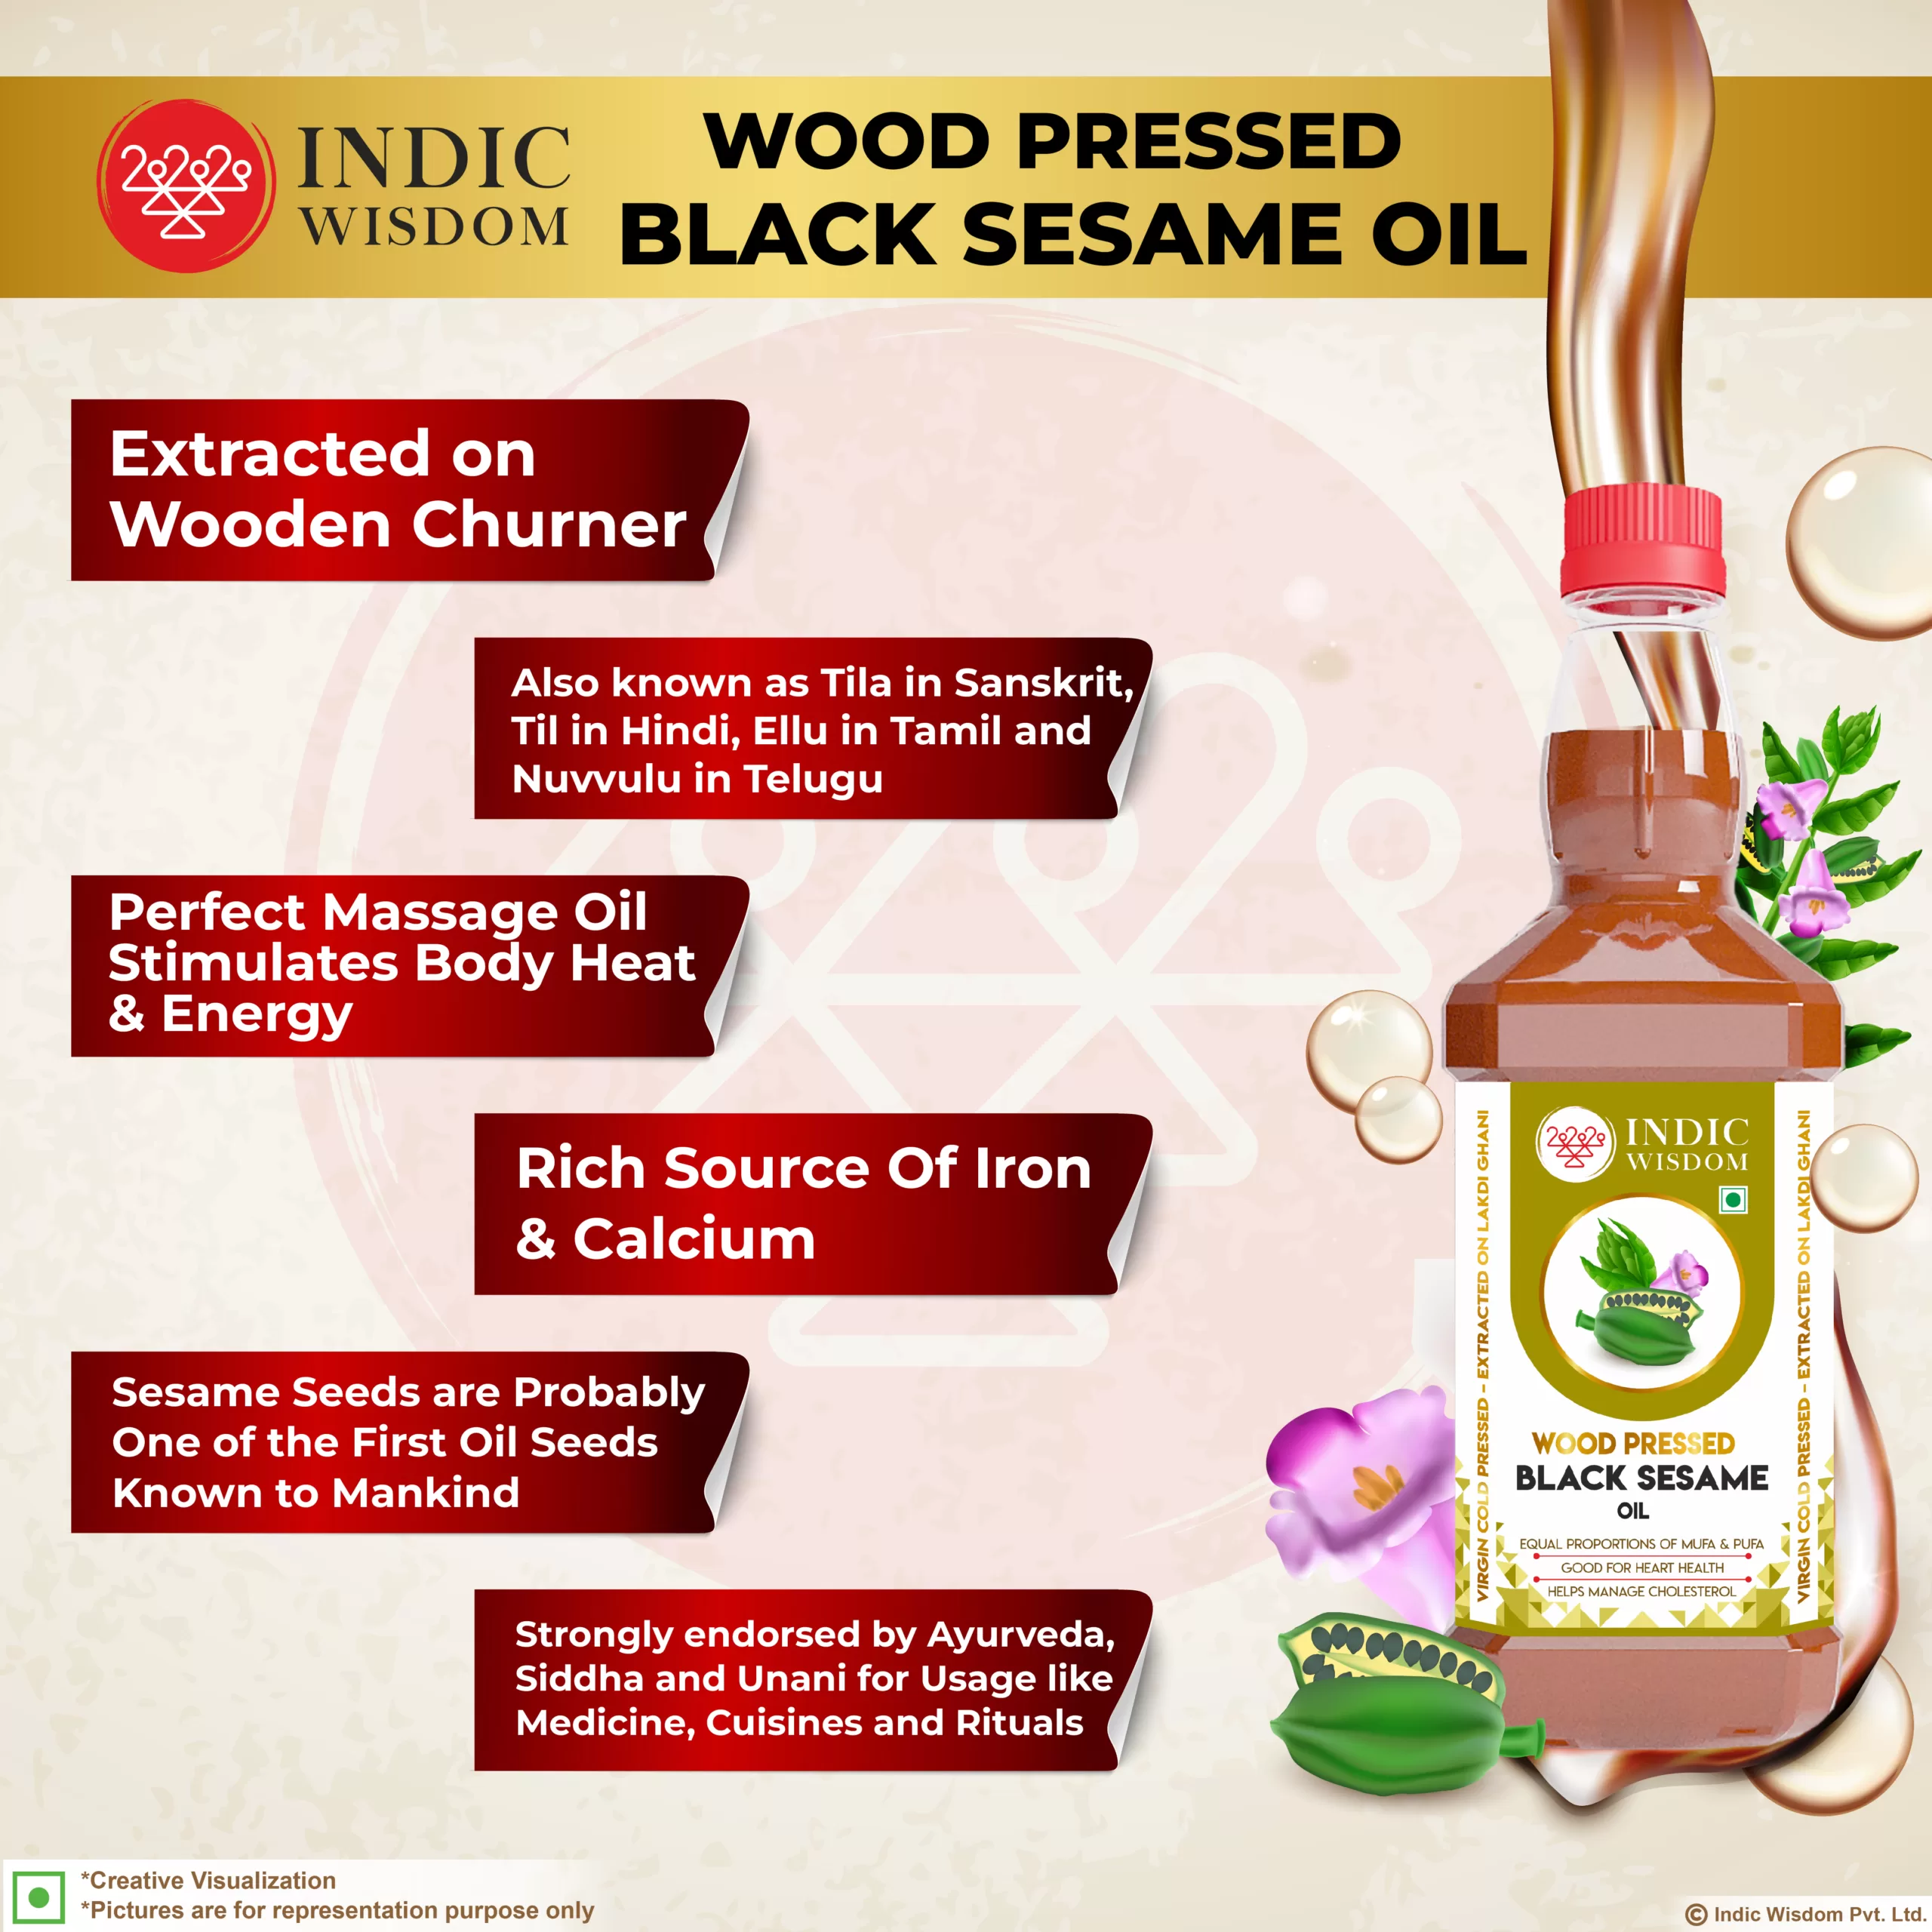 Why buy wood pressed sesame oil?